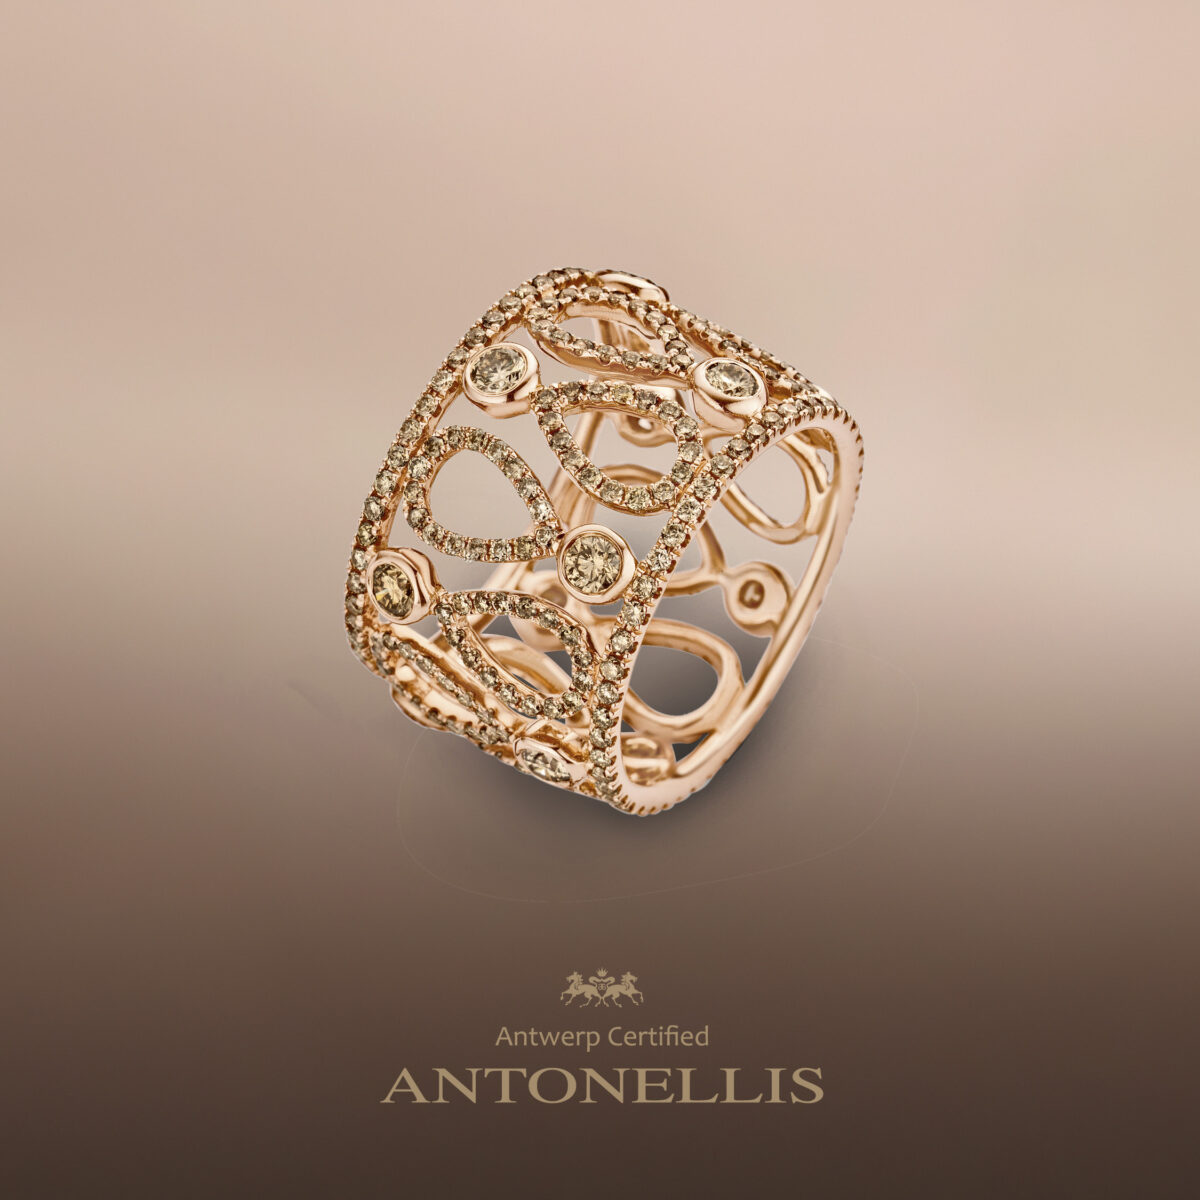 Juwelen van Antonellis te verkrijgen bij juwelier Suzanne Adams in Hasselt